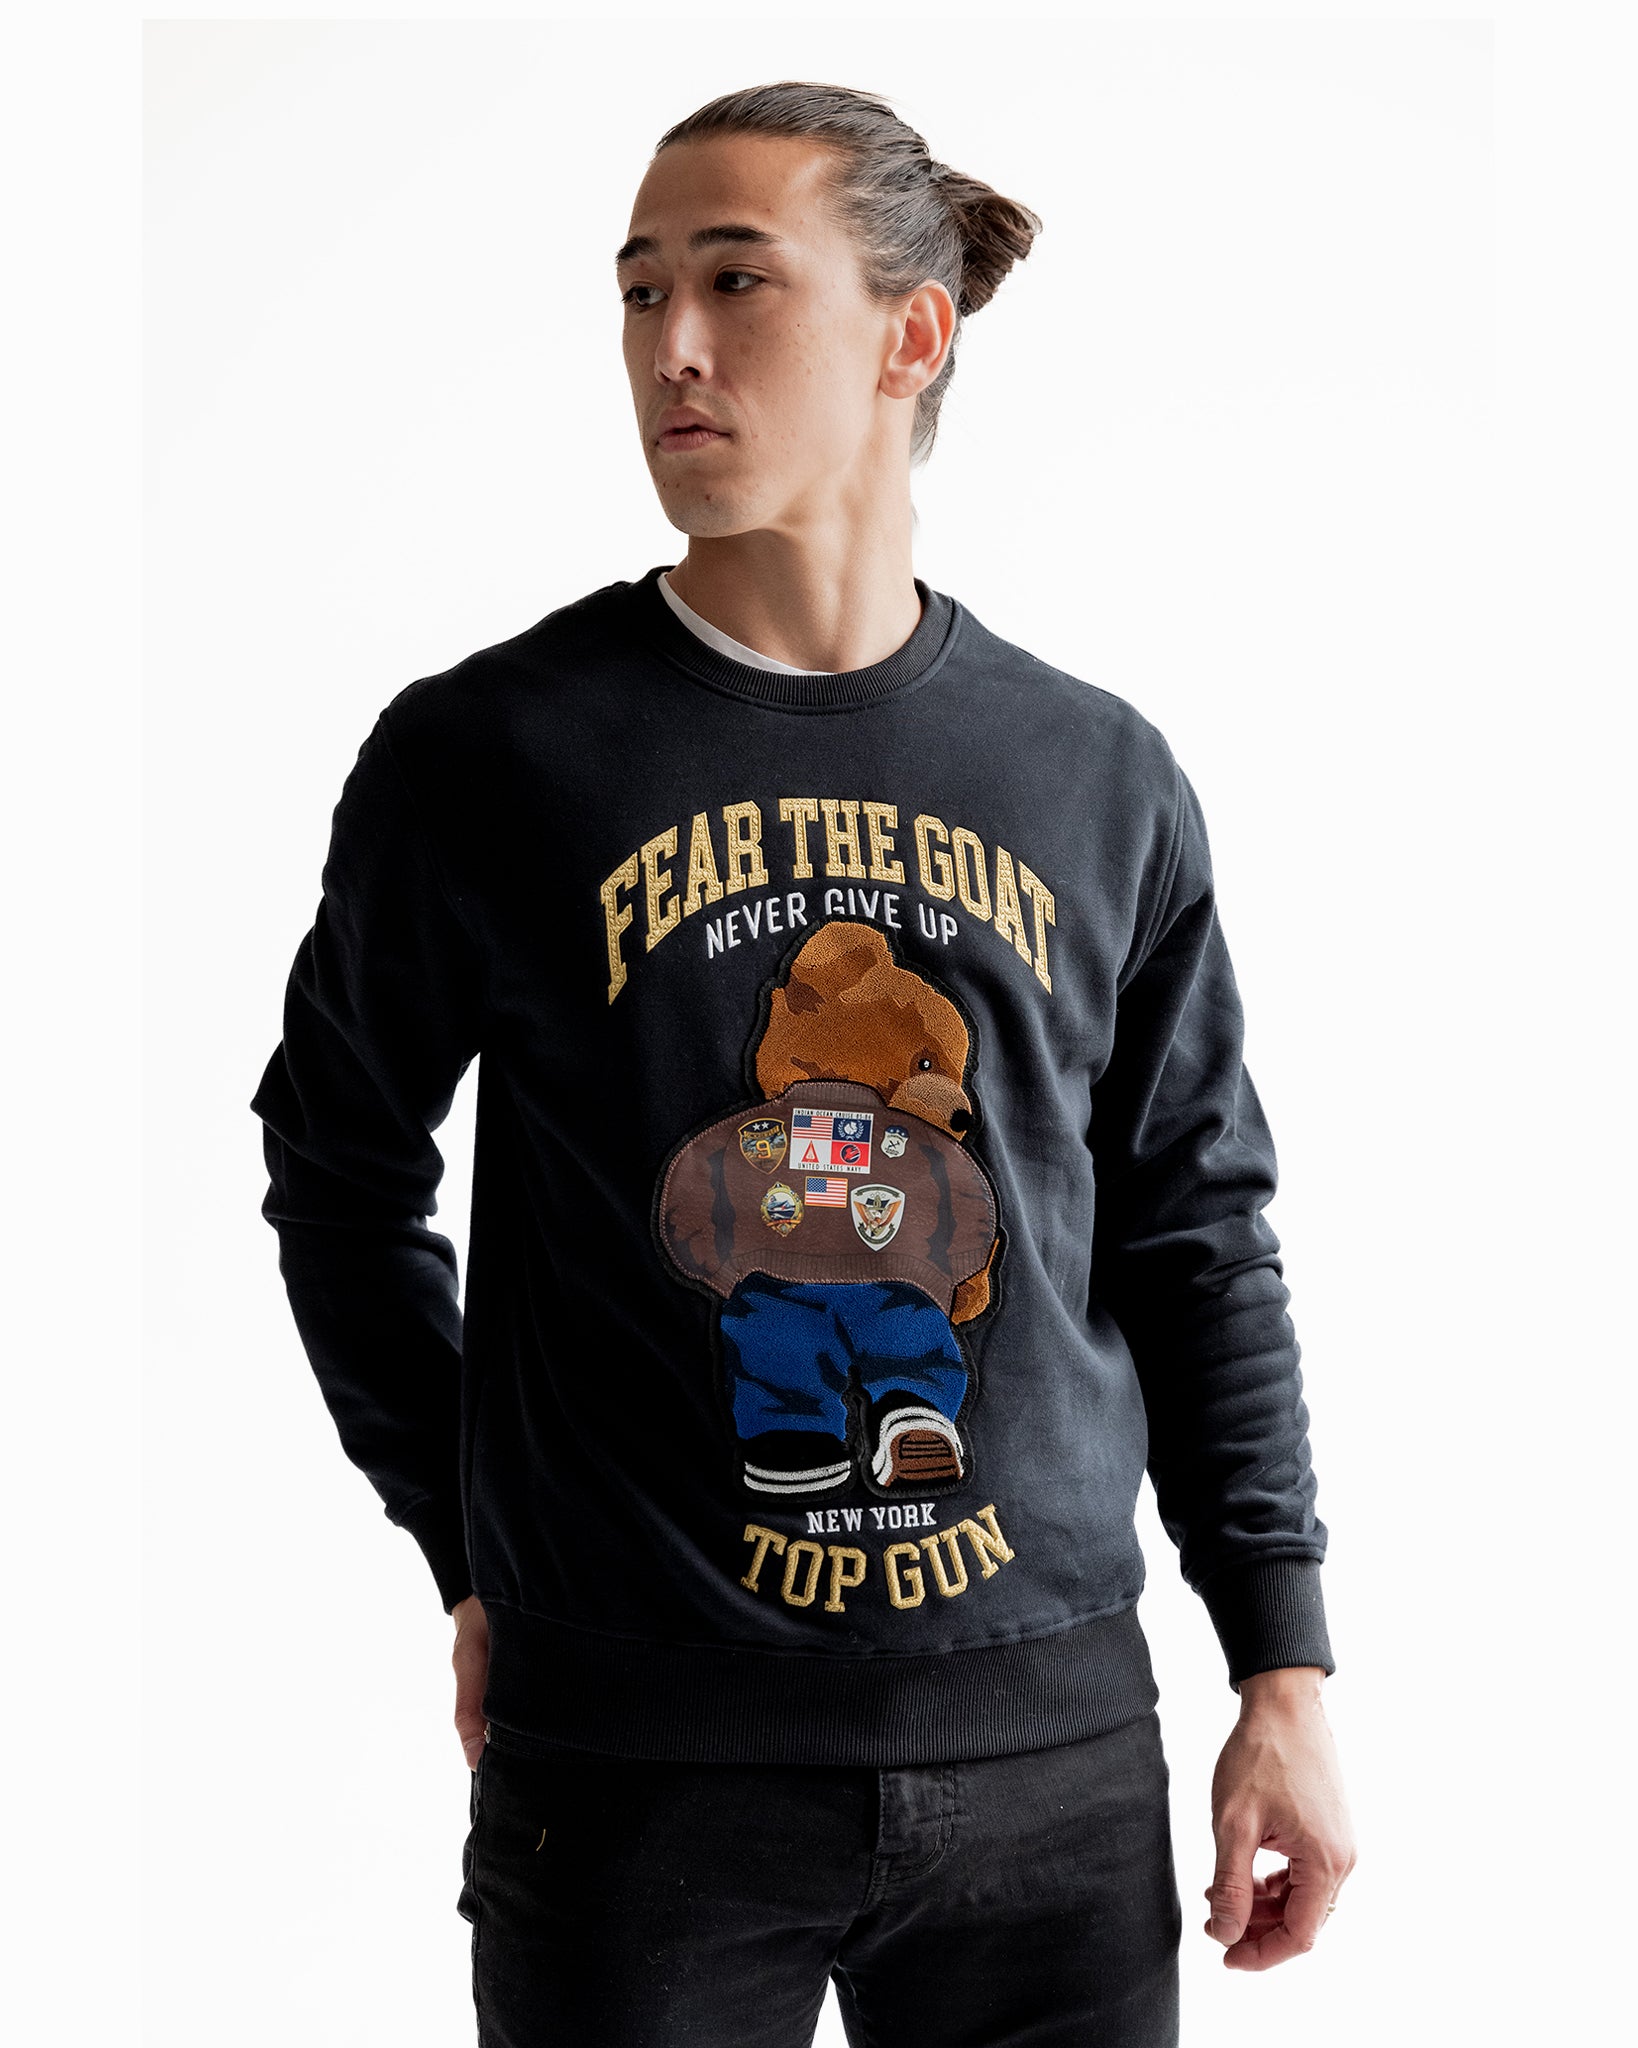 Men\'s Hoodies & Sweatshirts | The Top Gun® Official Store – Top Gun Store